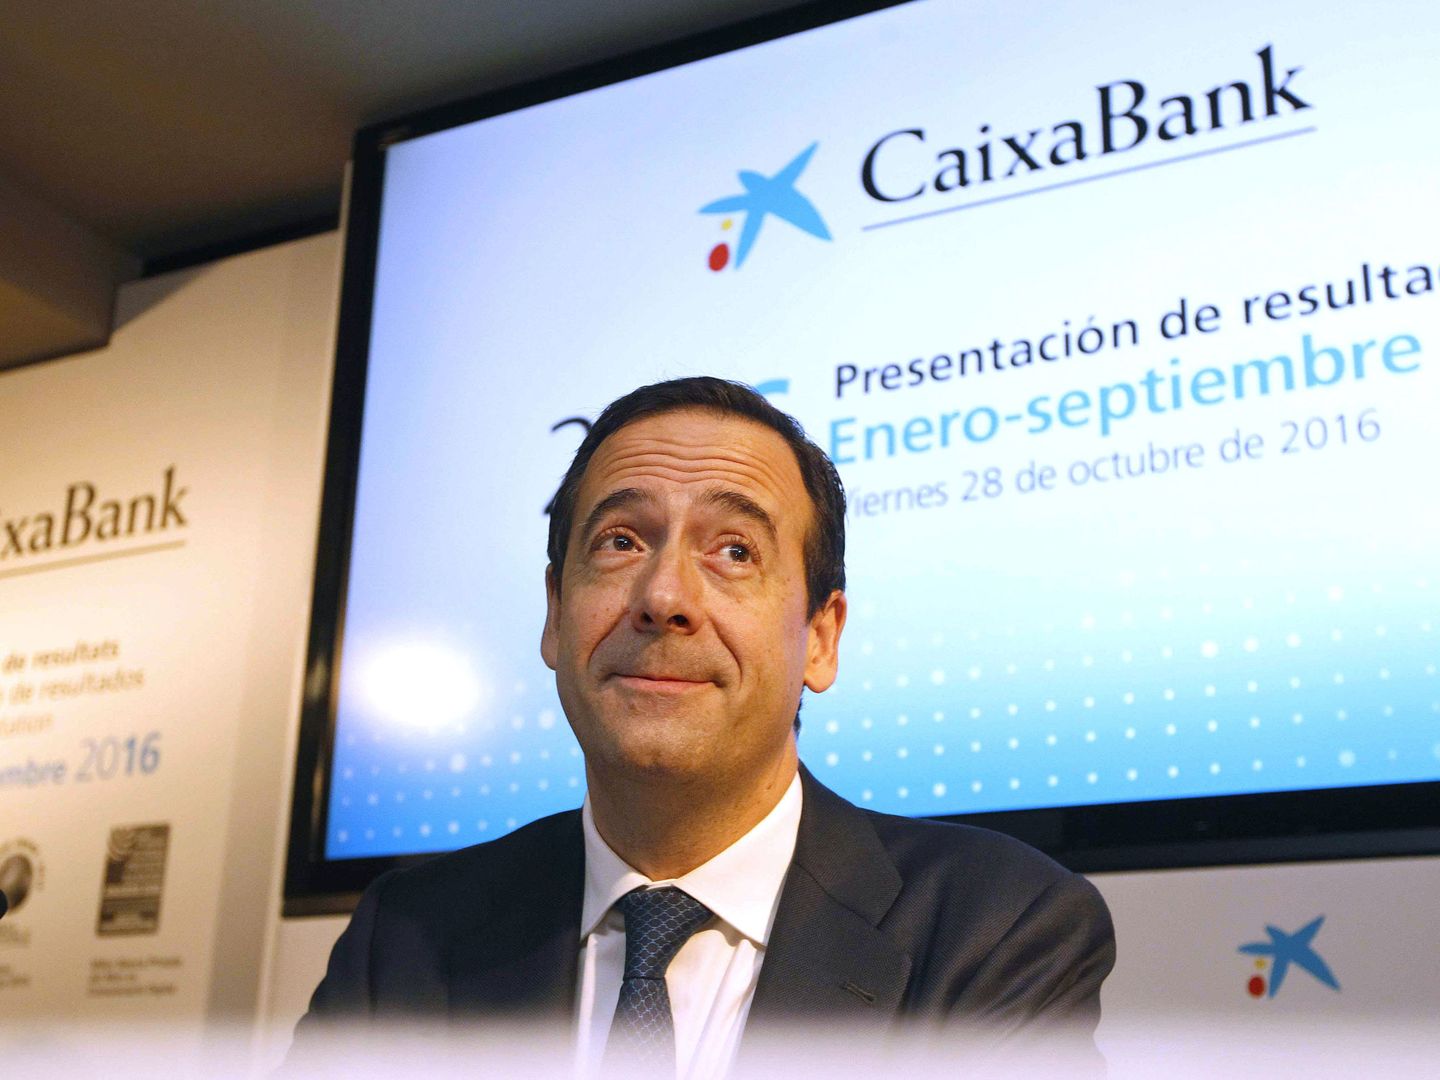 El consejero delegado de CaixaBank, Gonzalo Gortázar.